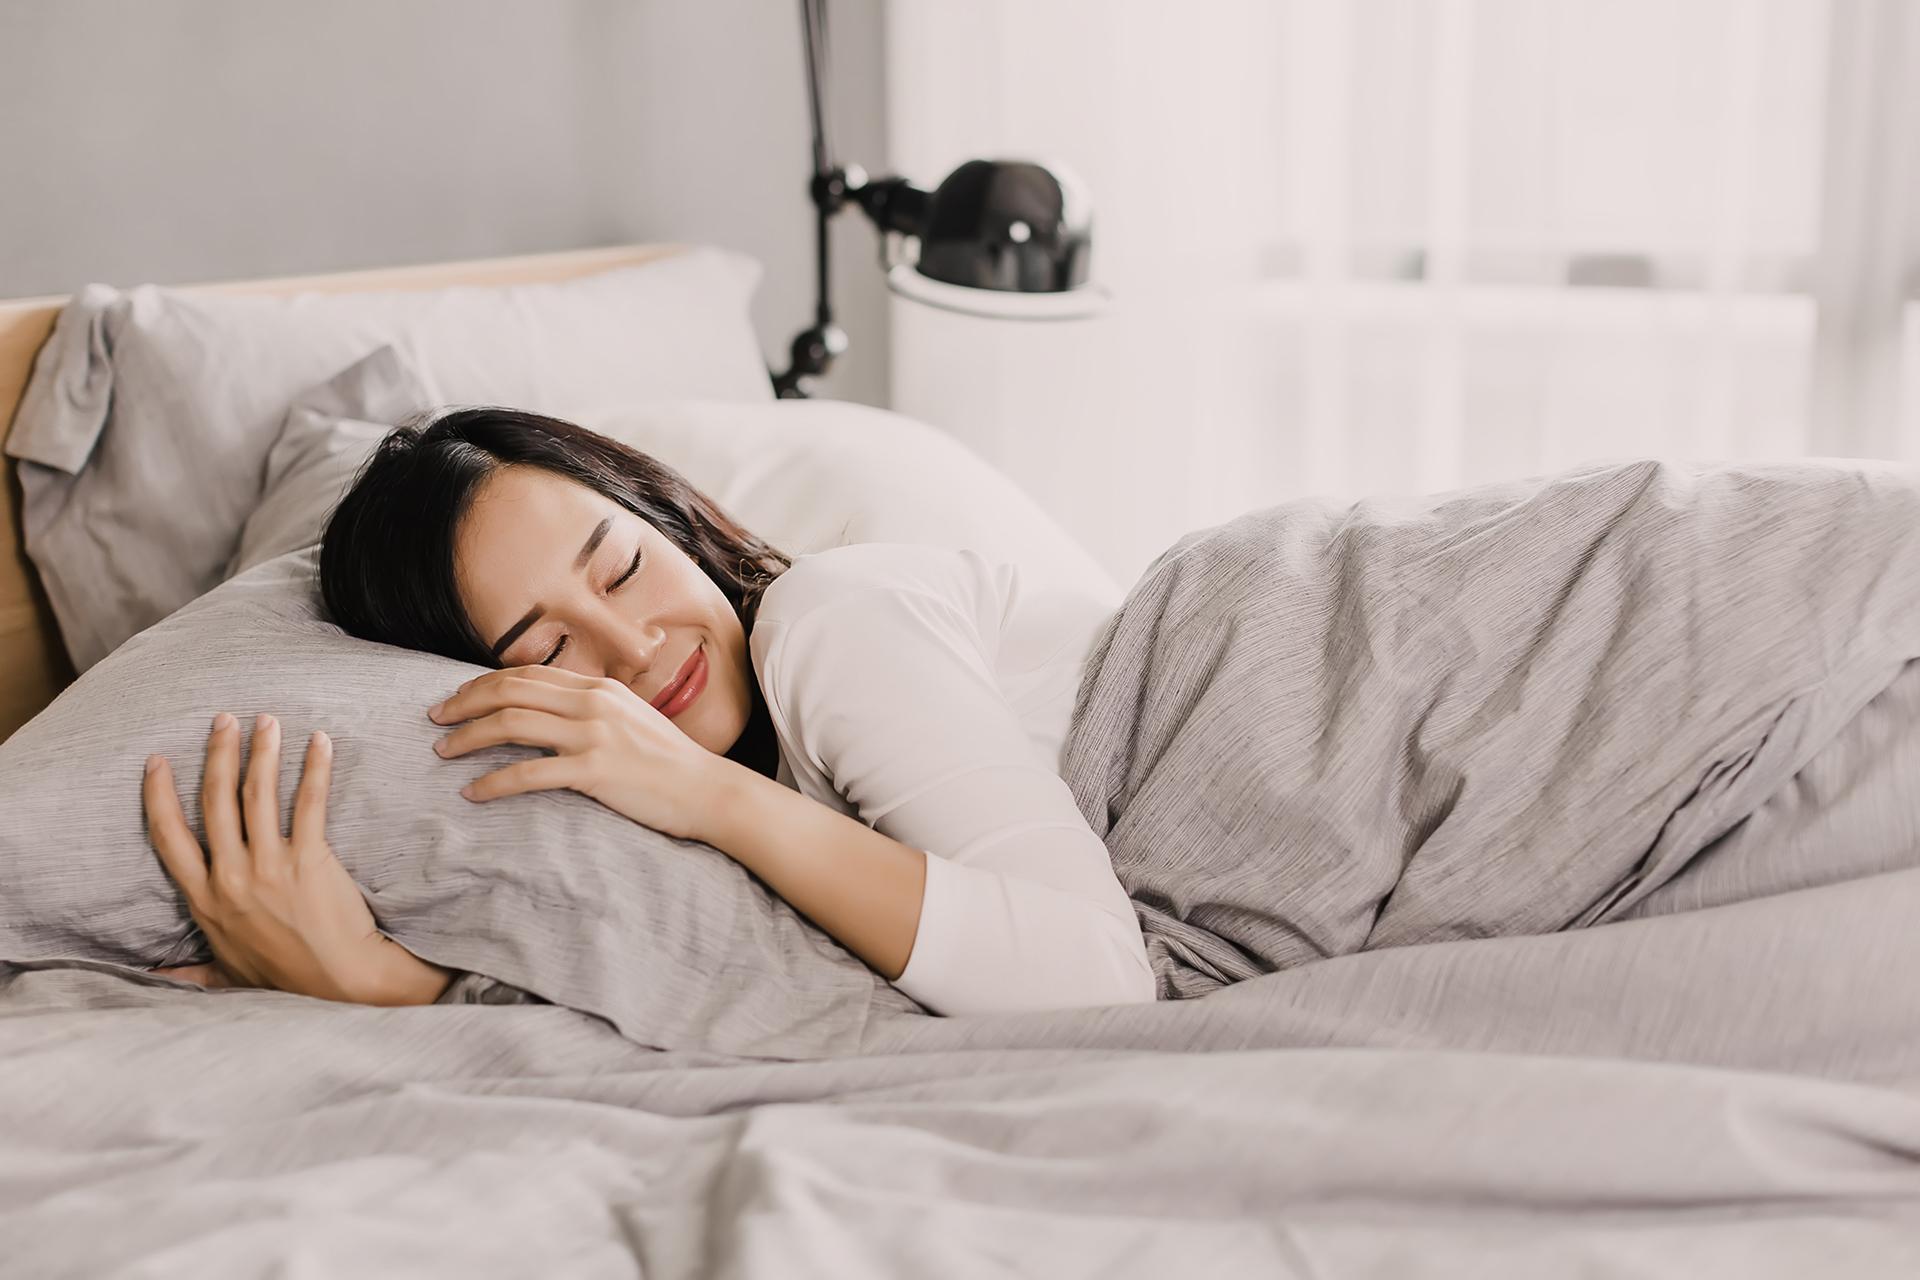 नींद और मानसिक स्वास्थ्य कैसे जुड़े हुए हैं? नींद में सुधार के लिए युक्तियाँ